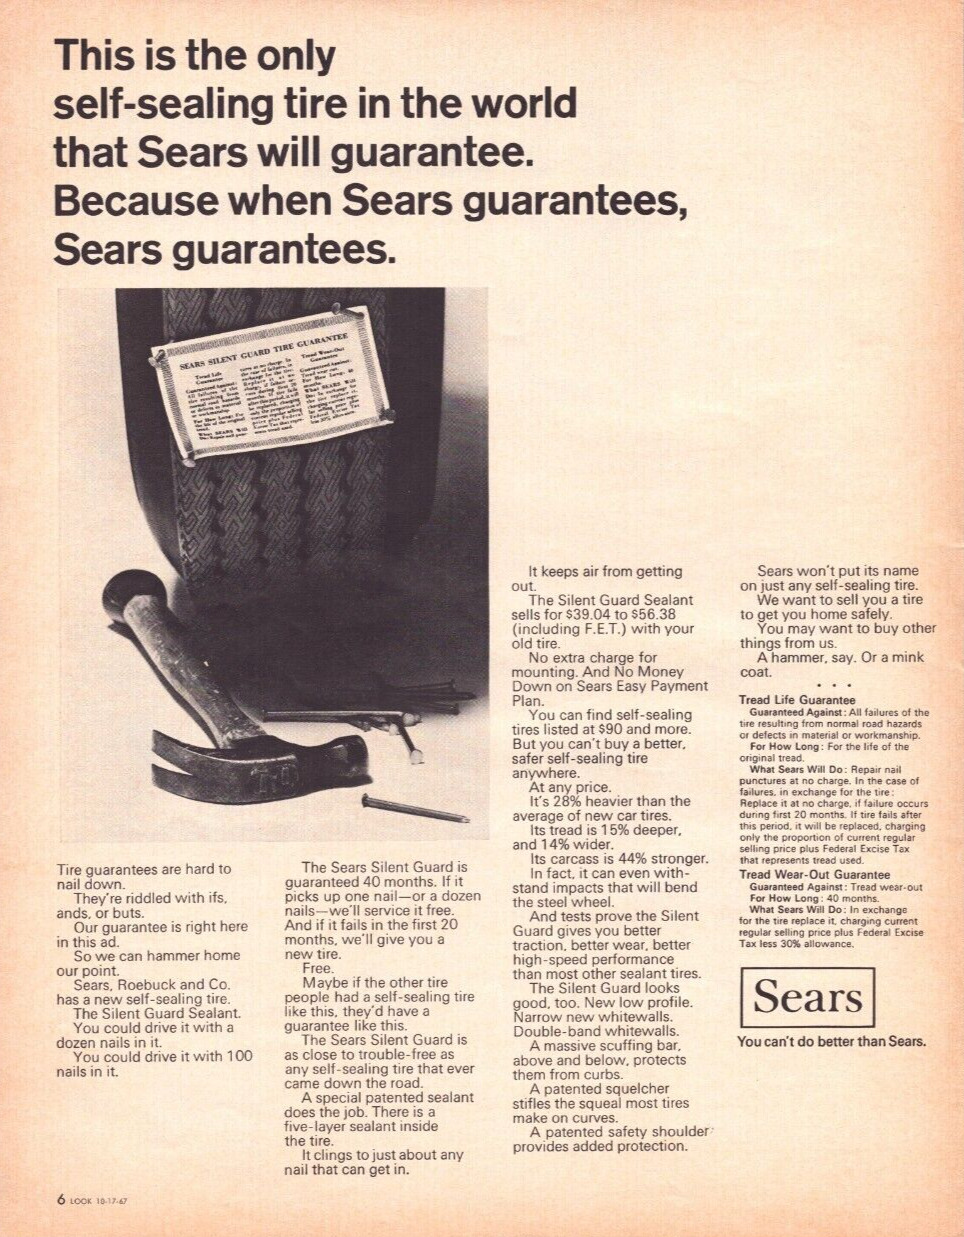 1968 Sears Self-sealing Tire Print Ad Hammer Nails Safety Guarantee